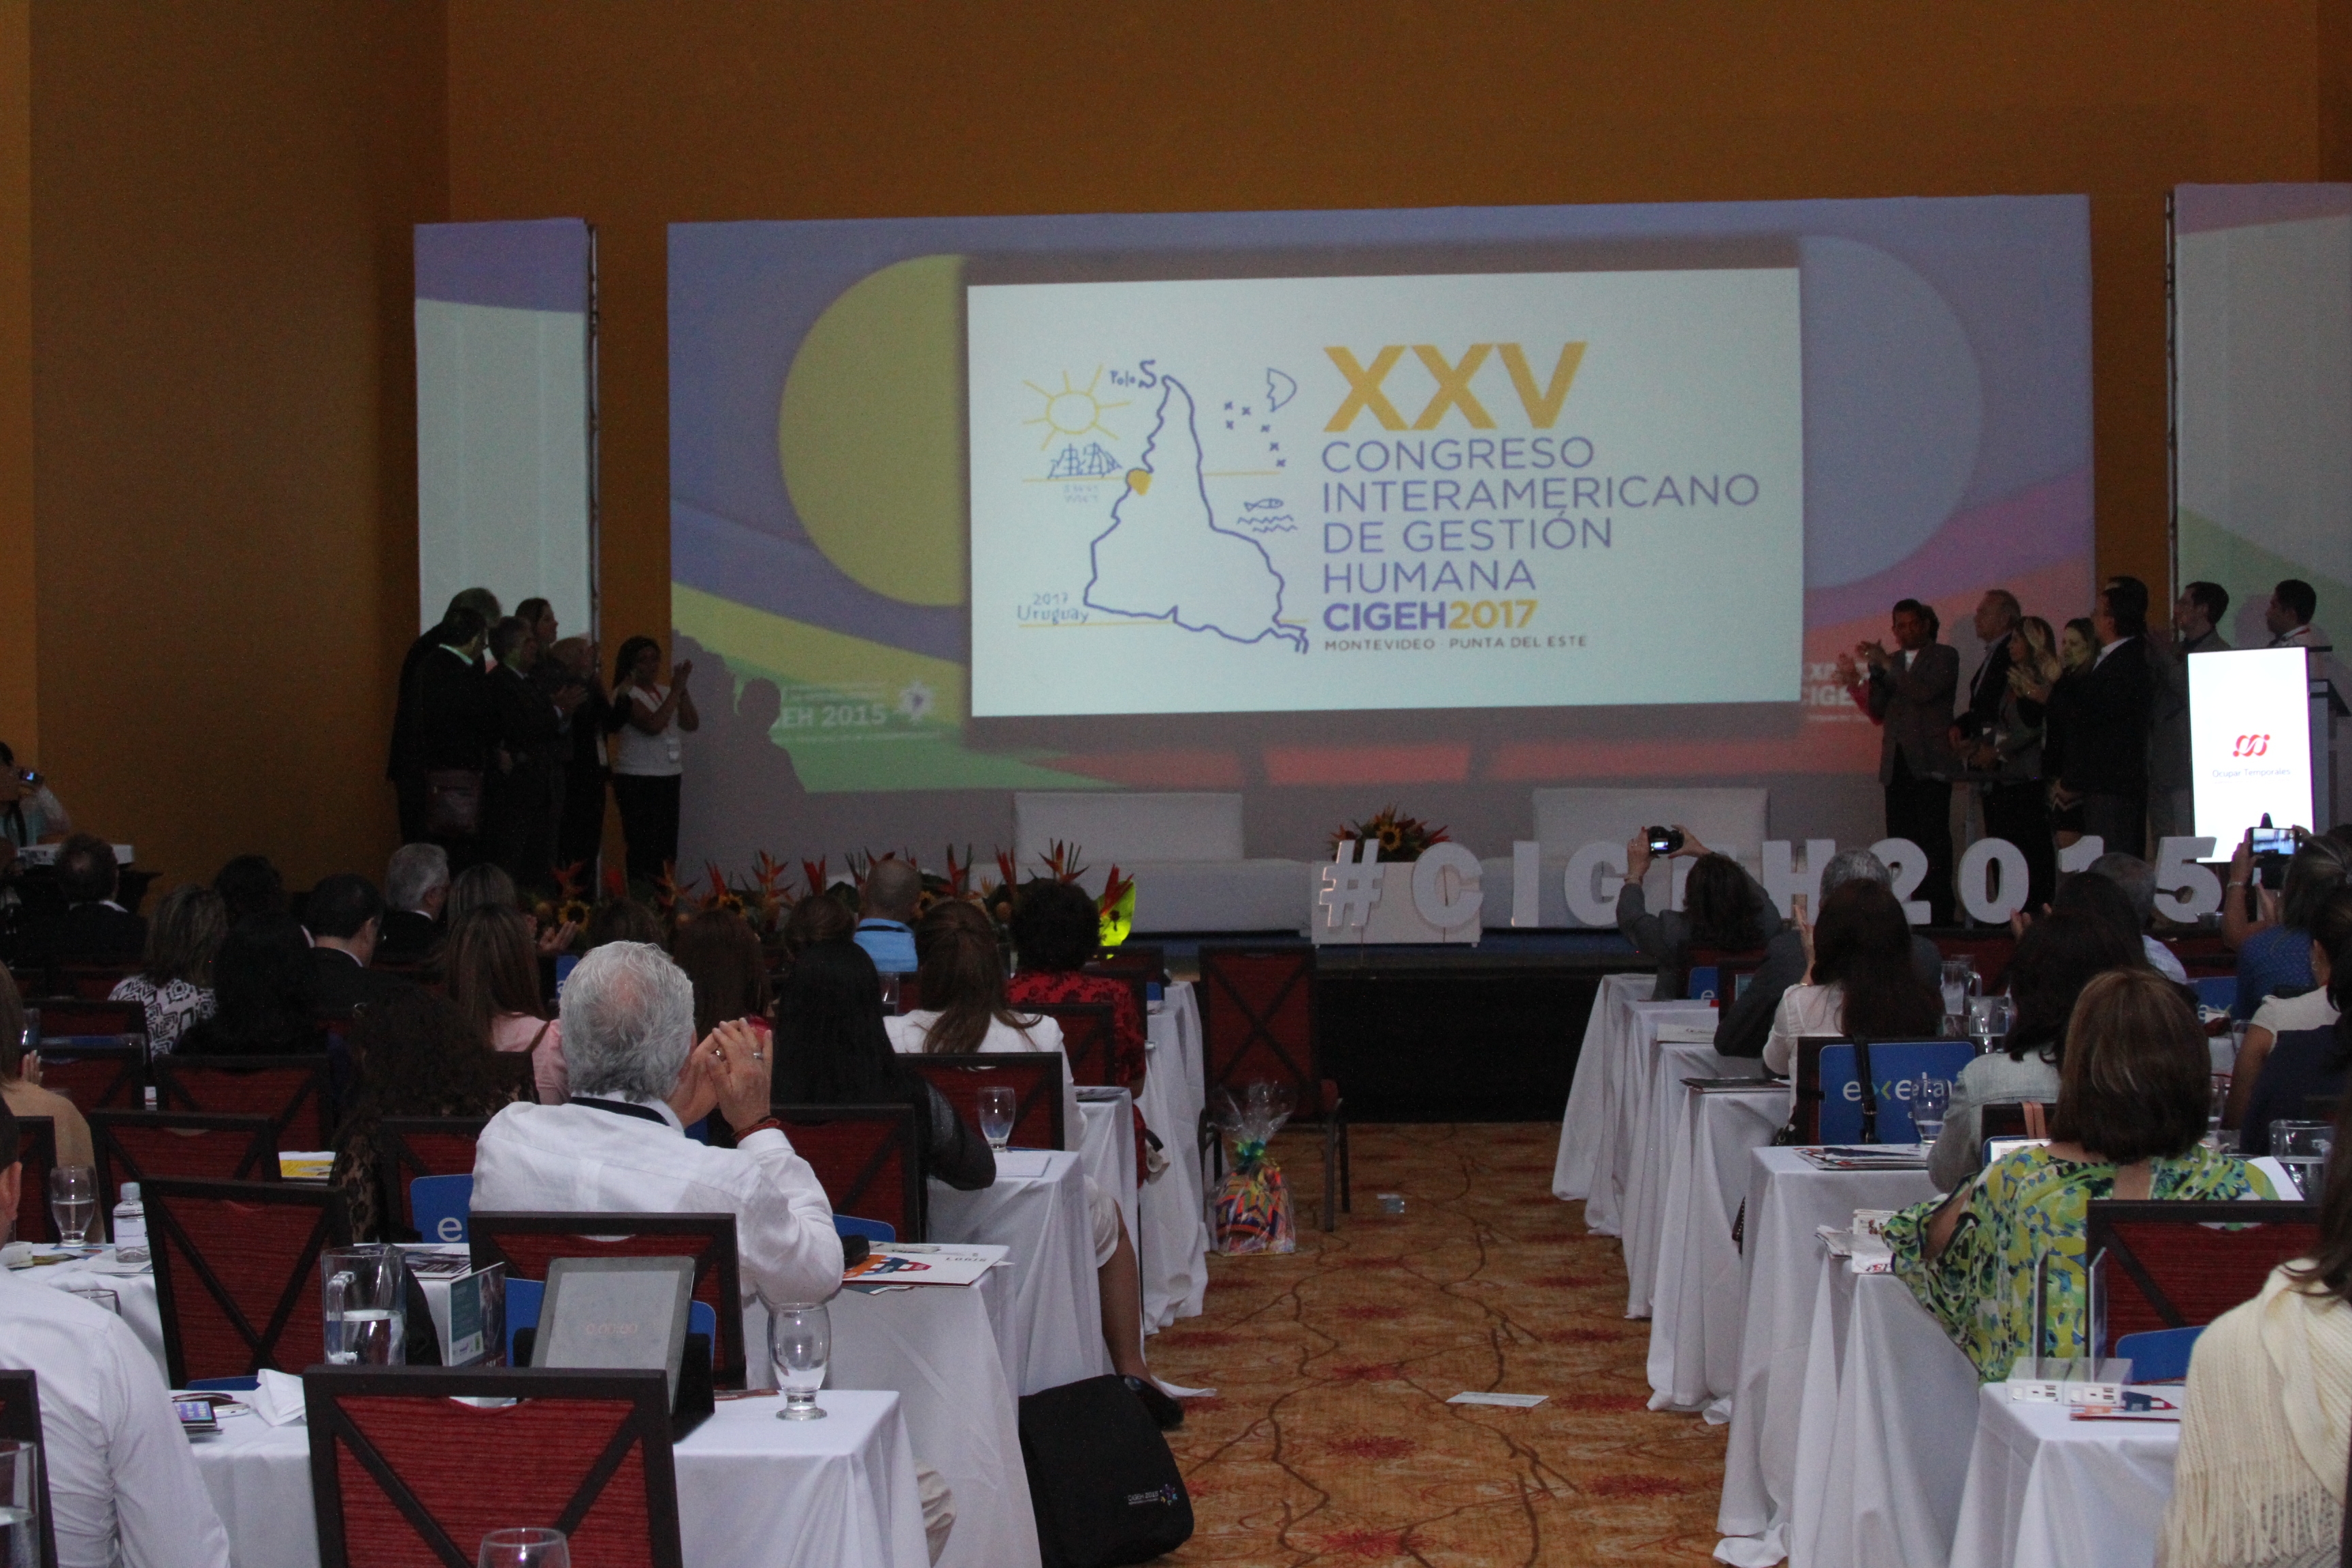 Congreso Interamericano de Gestión Humana CIGEH 2015